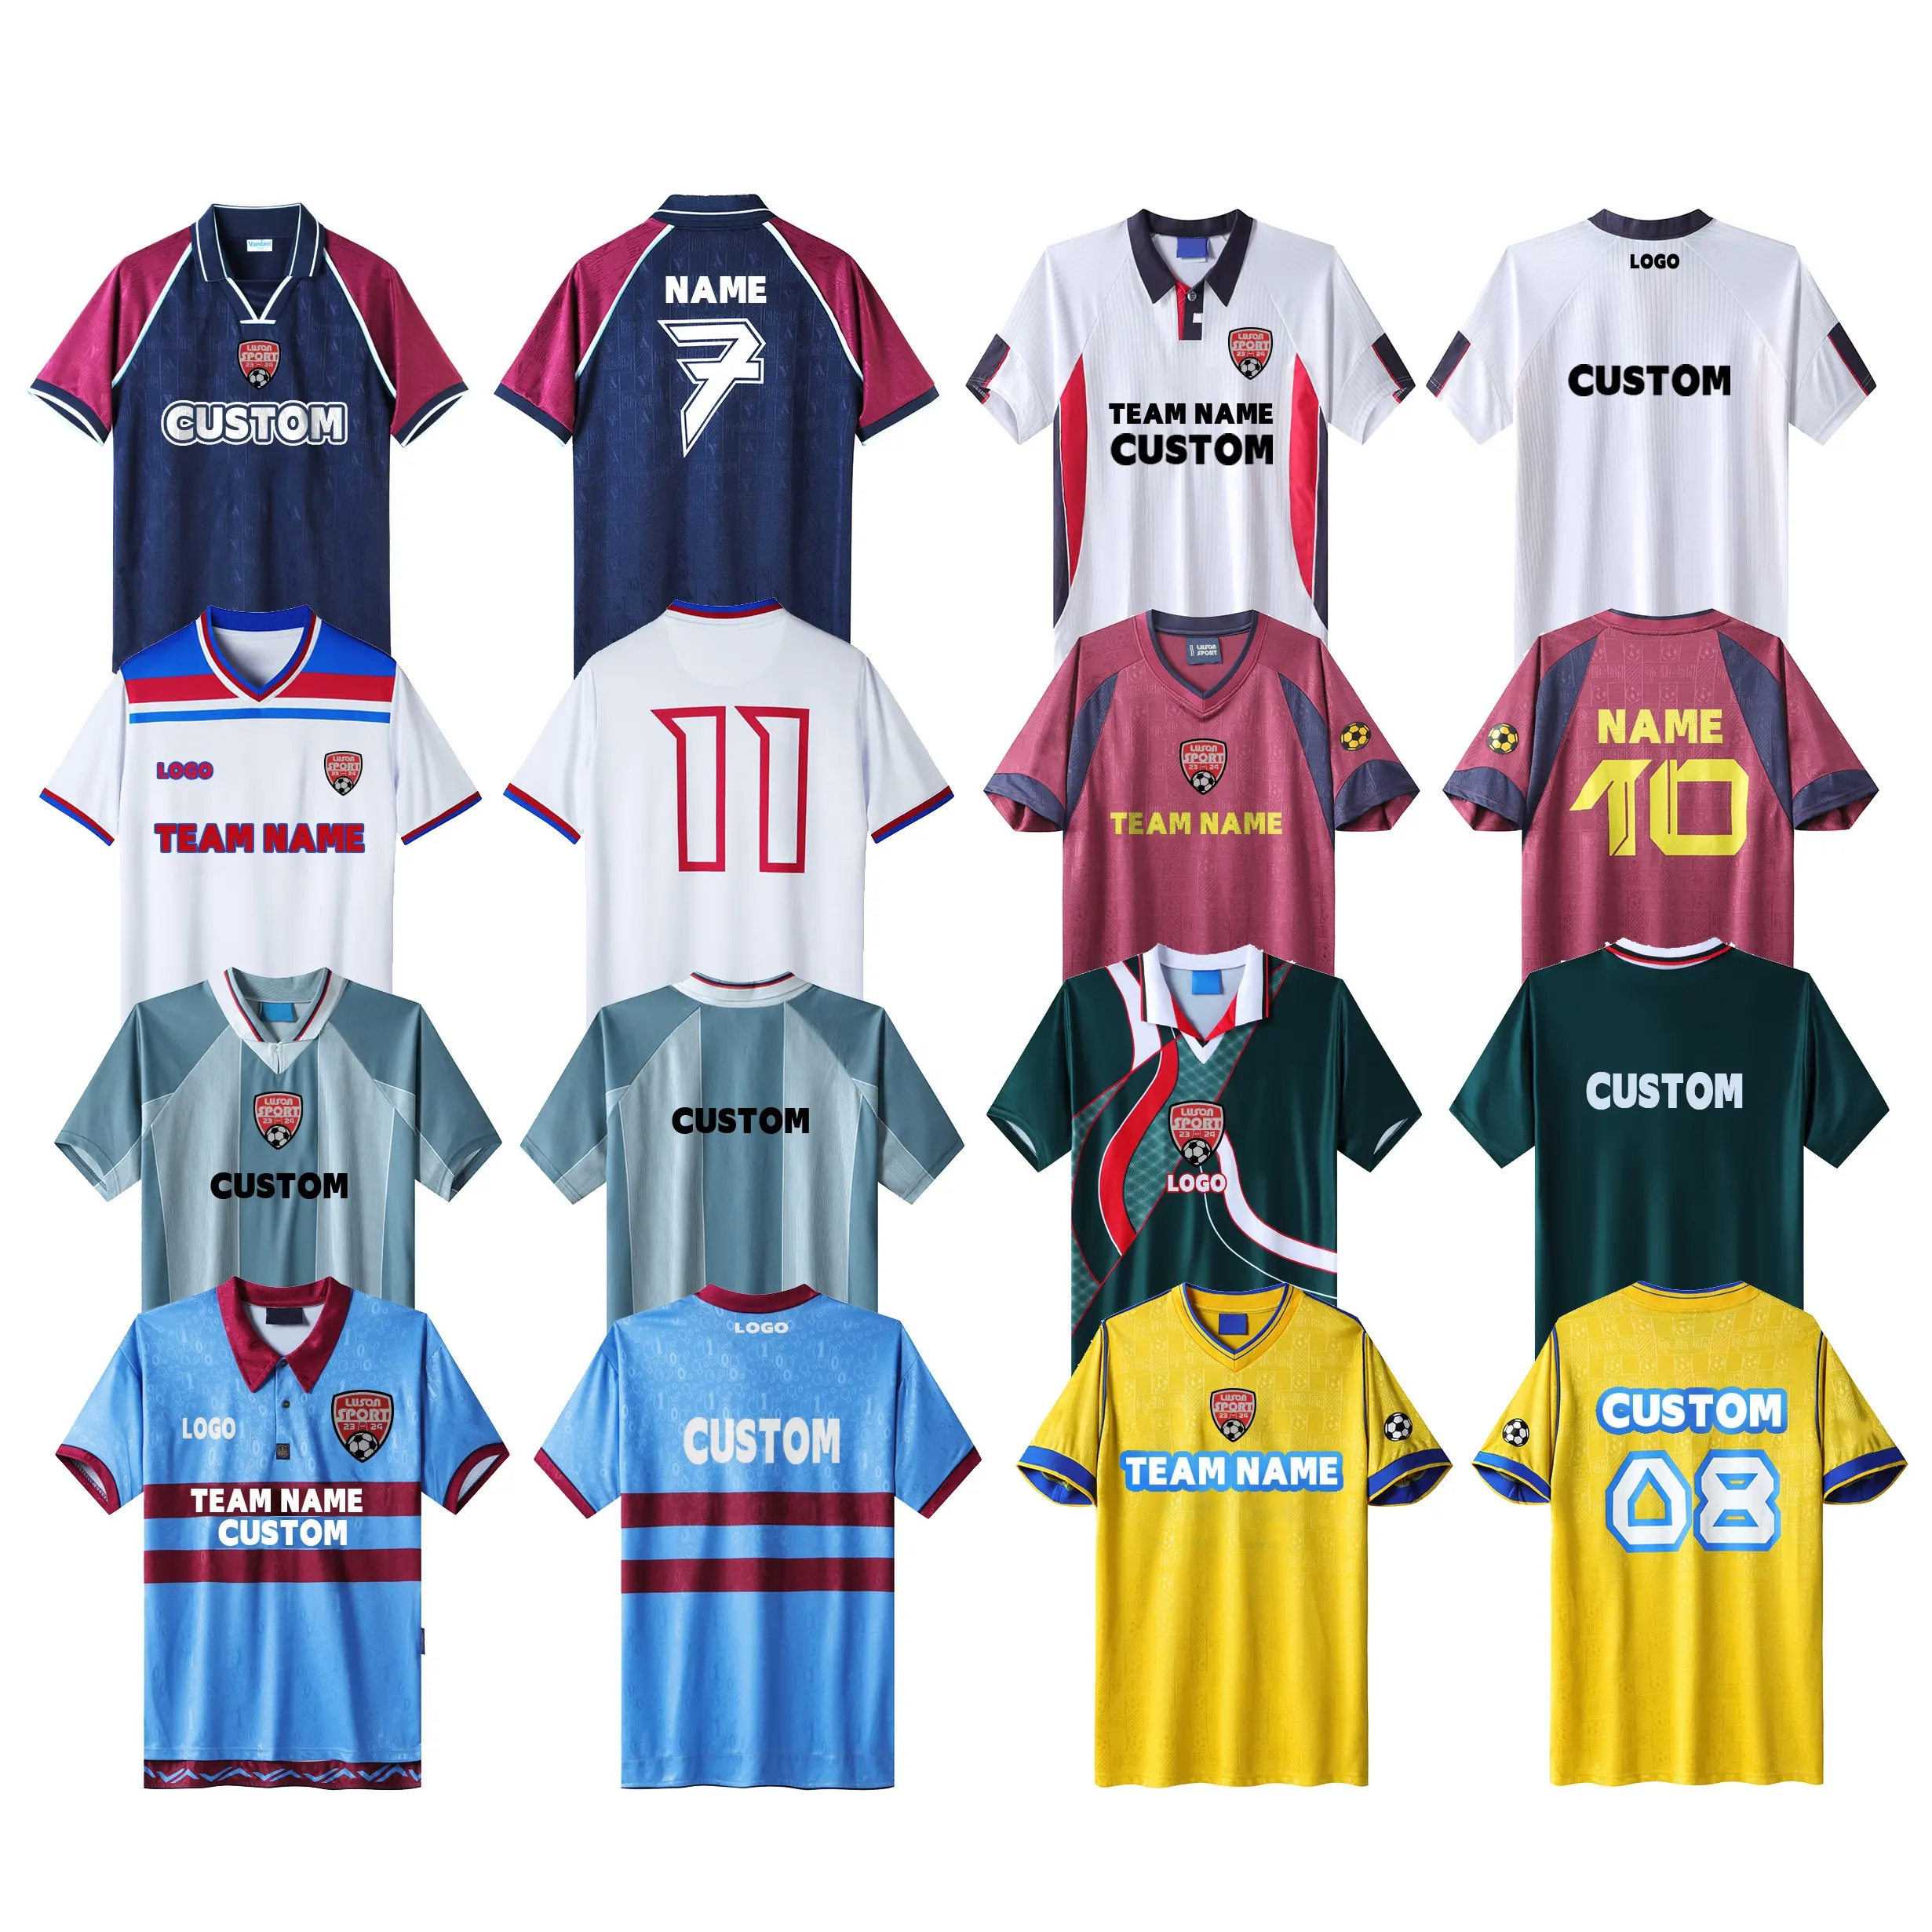 Luson Sports Alta Qualidade Tailândia Jersey Camisa De Futebol Vermelho E Preto Top Quality Inglaterra Camisa De Futebol Retro Camisa De Futebol